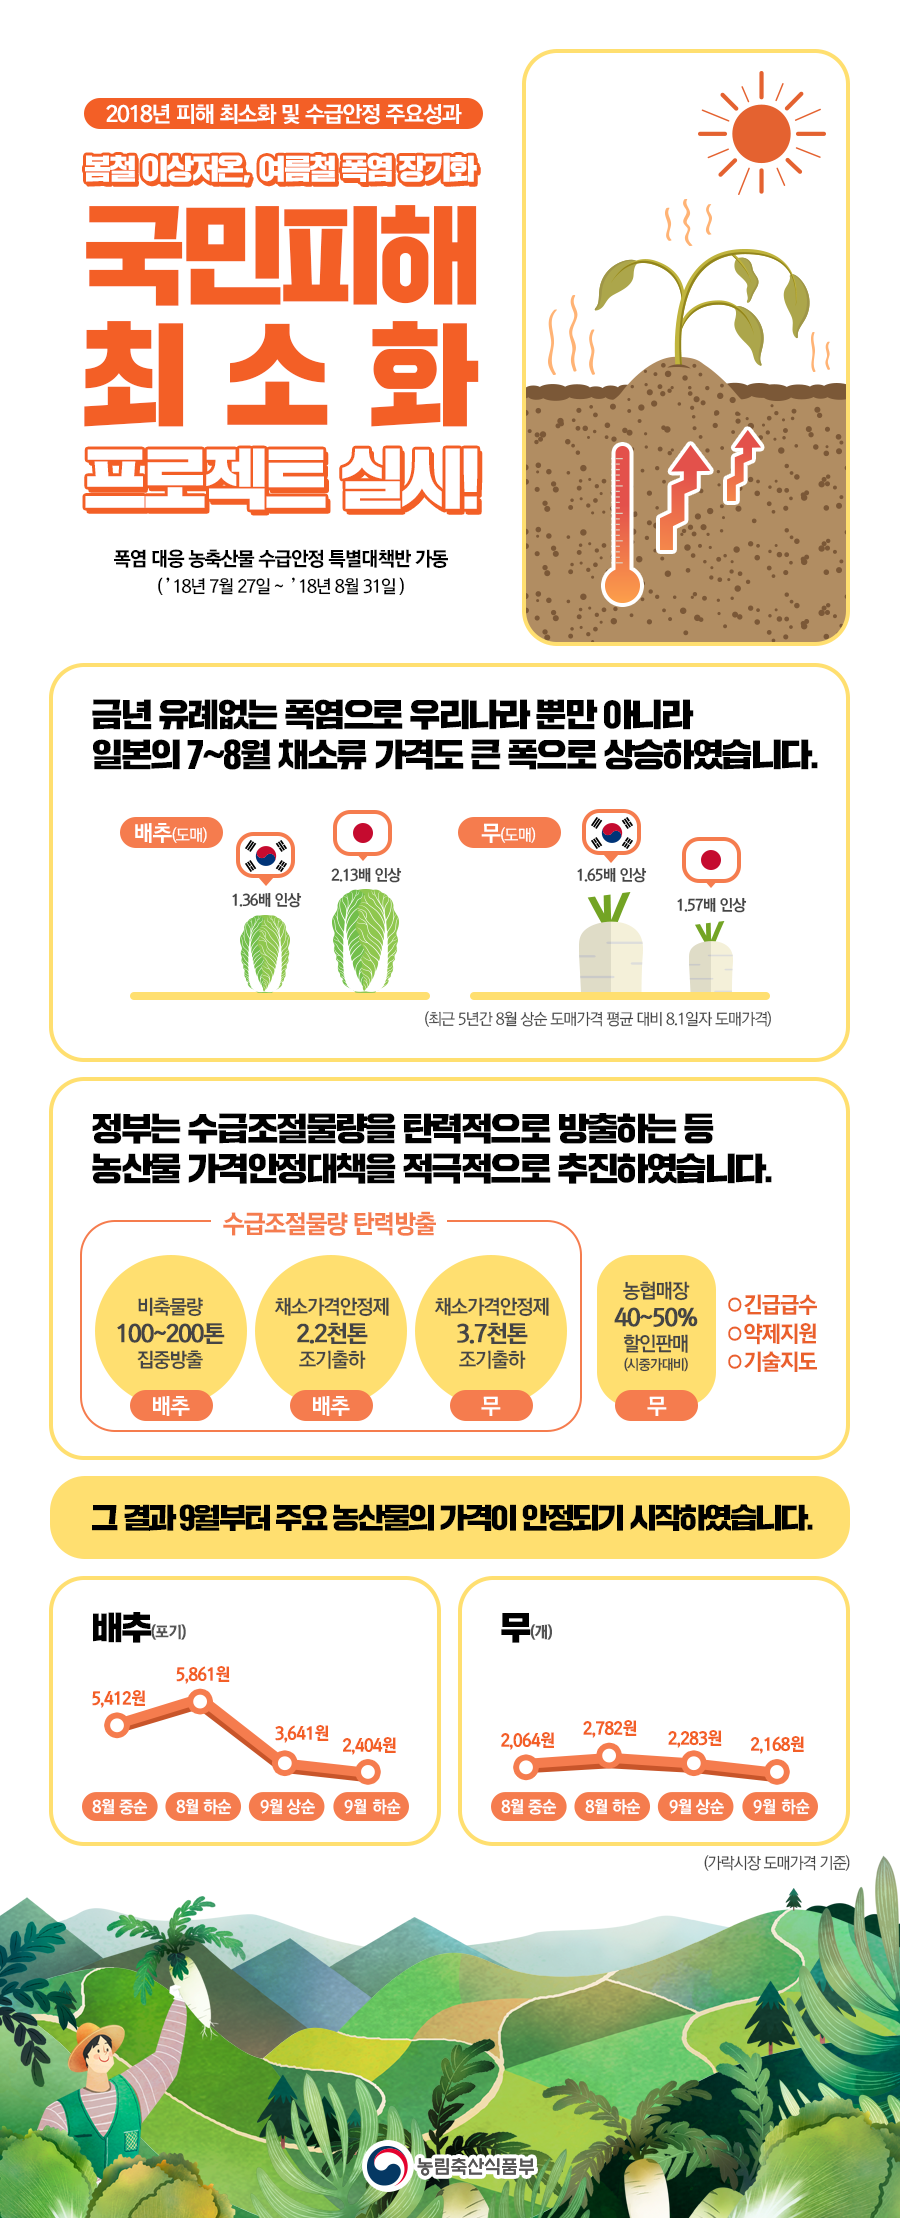 국민피해 최소화 프로젝트  이상기후에도 가격 안정화.png